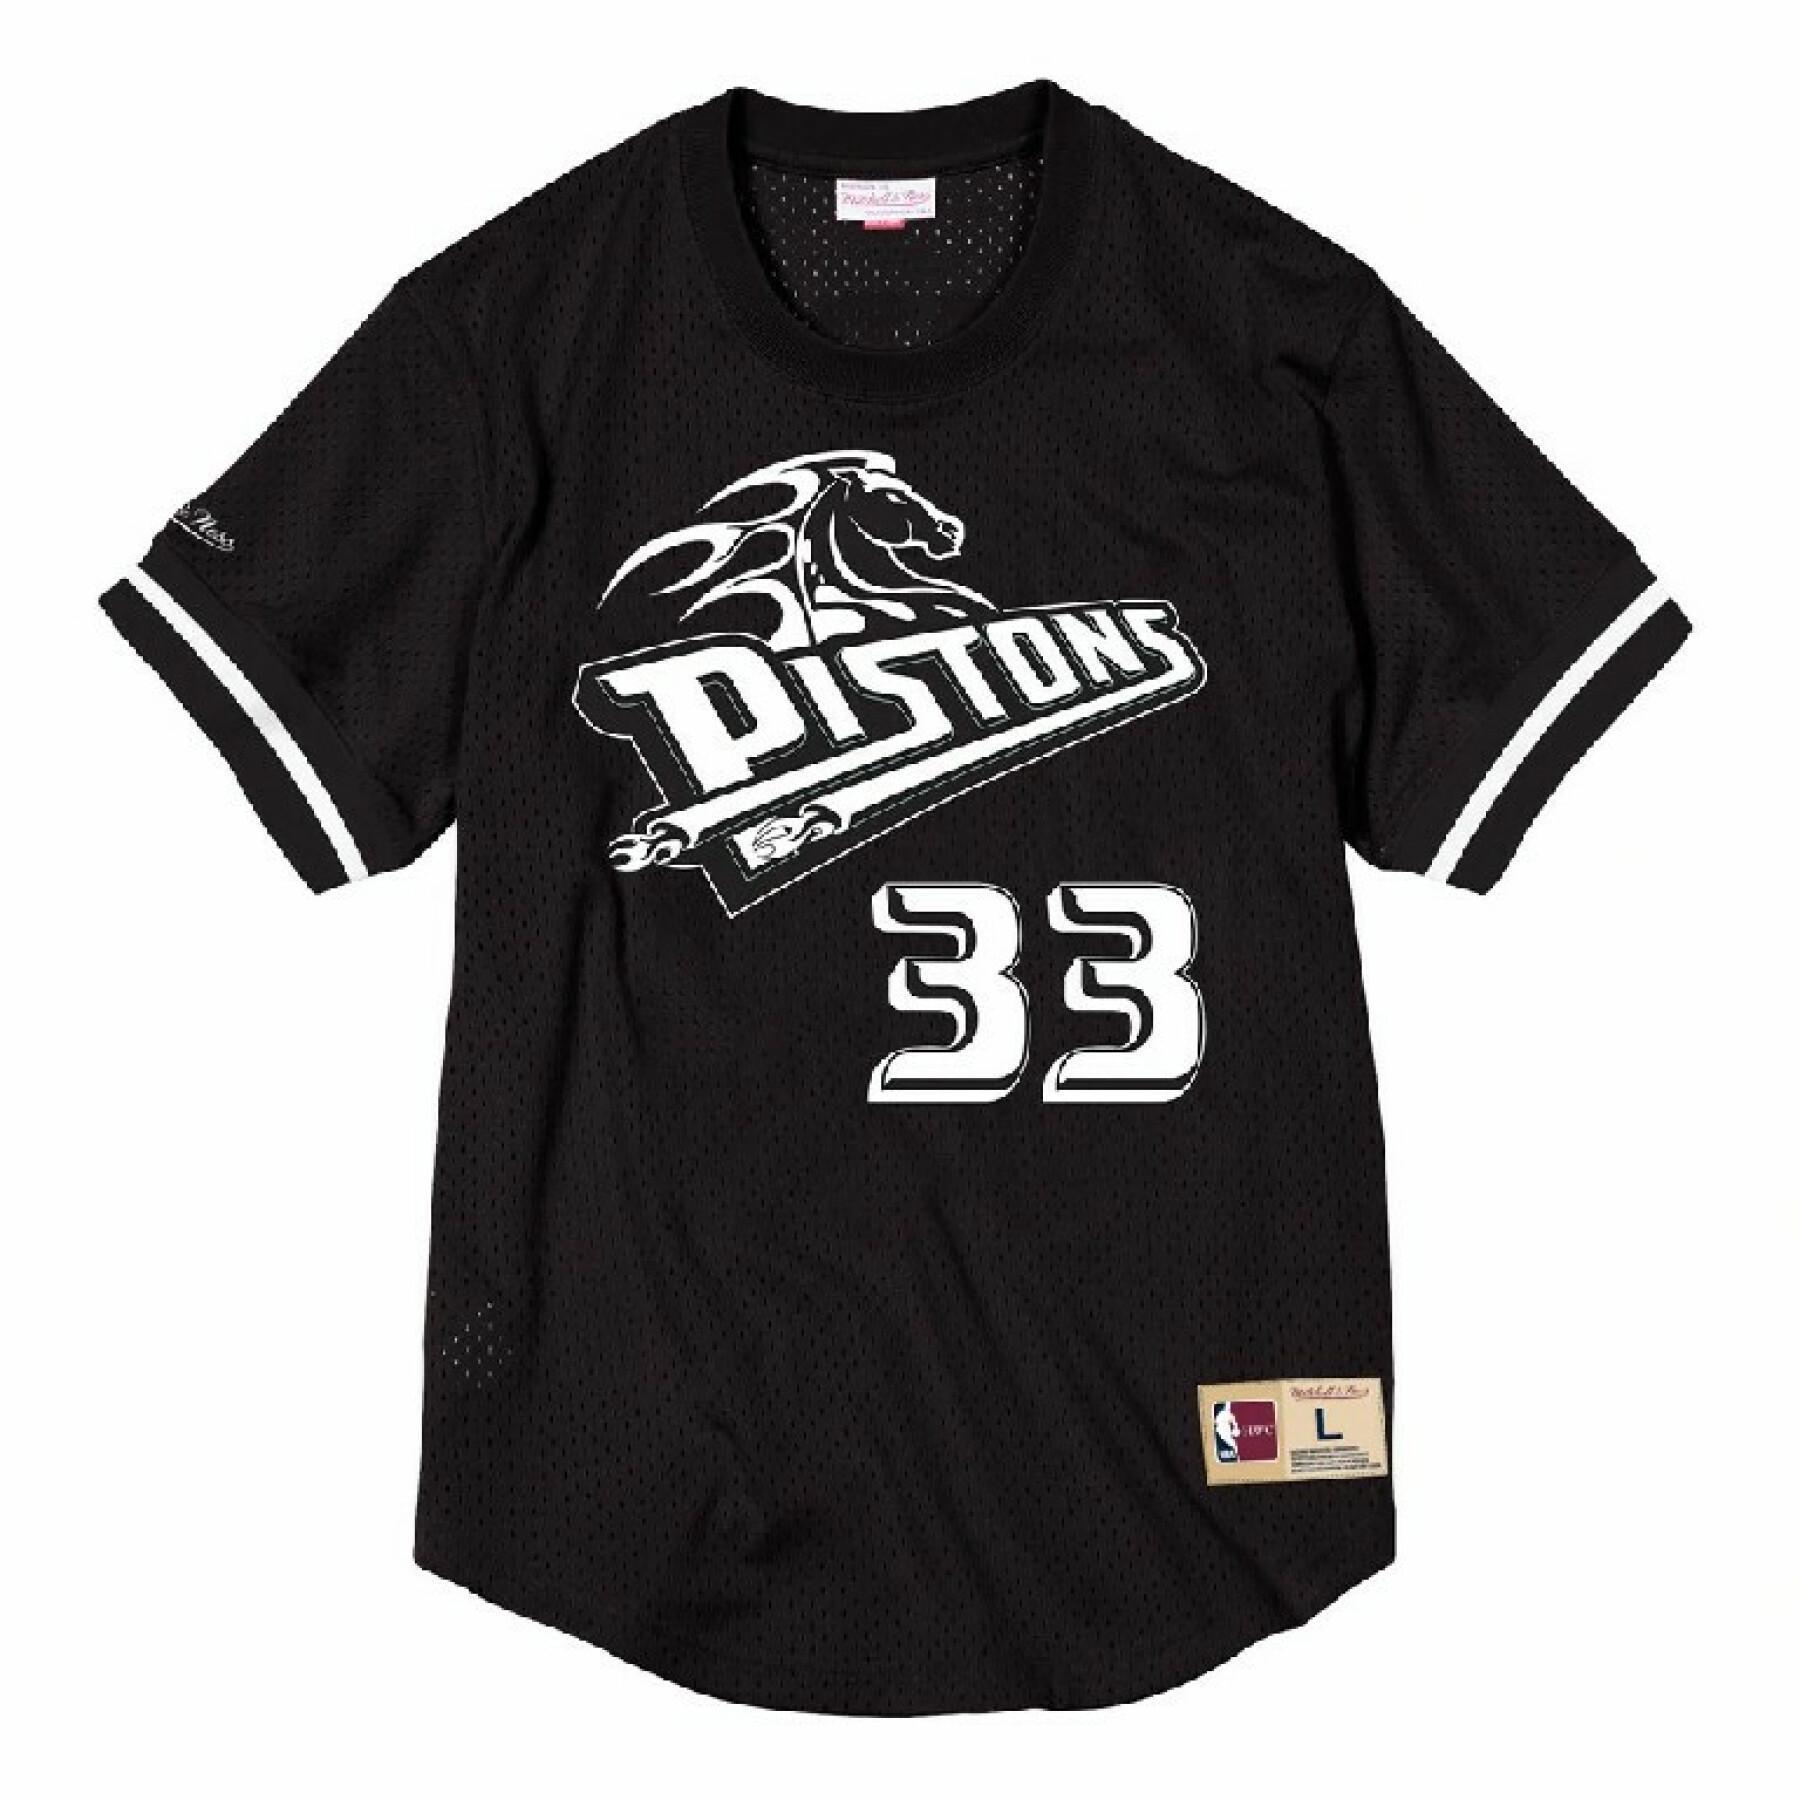 Camiseta Detroit Pistons black & white Grant Hill